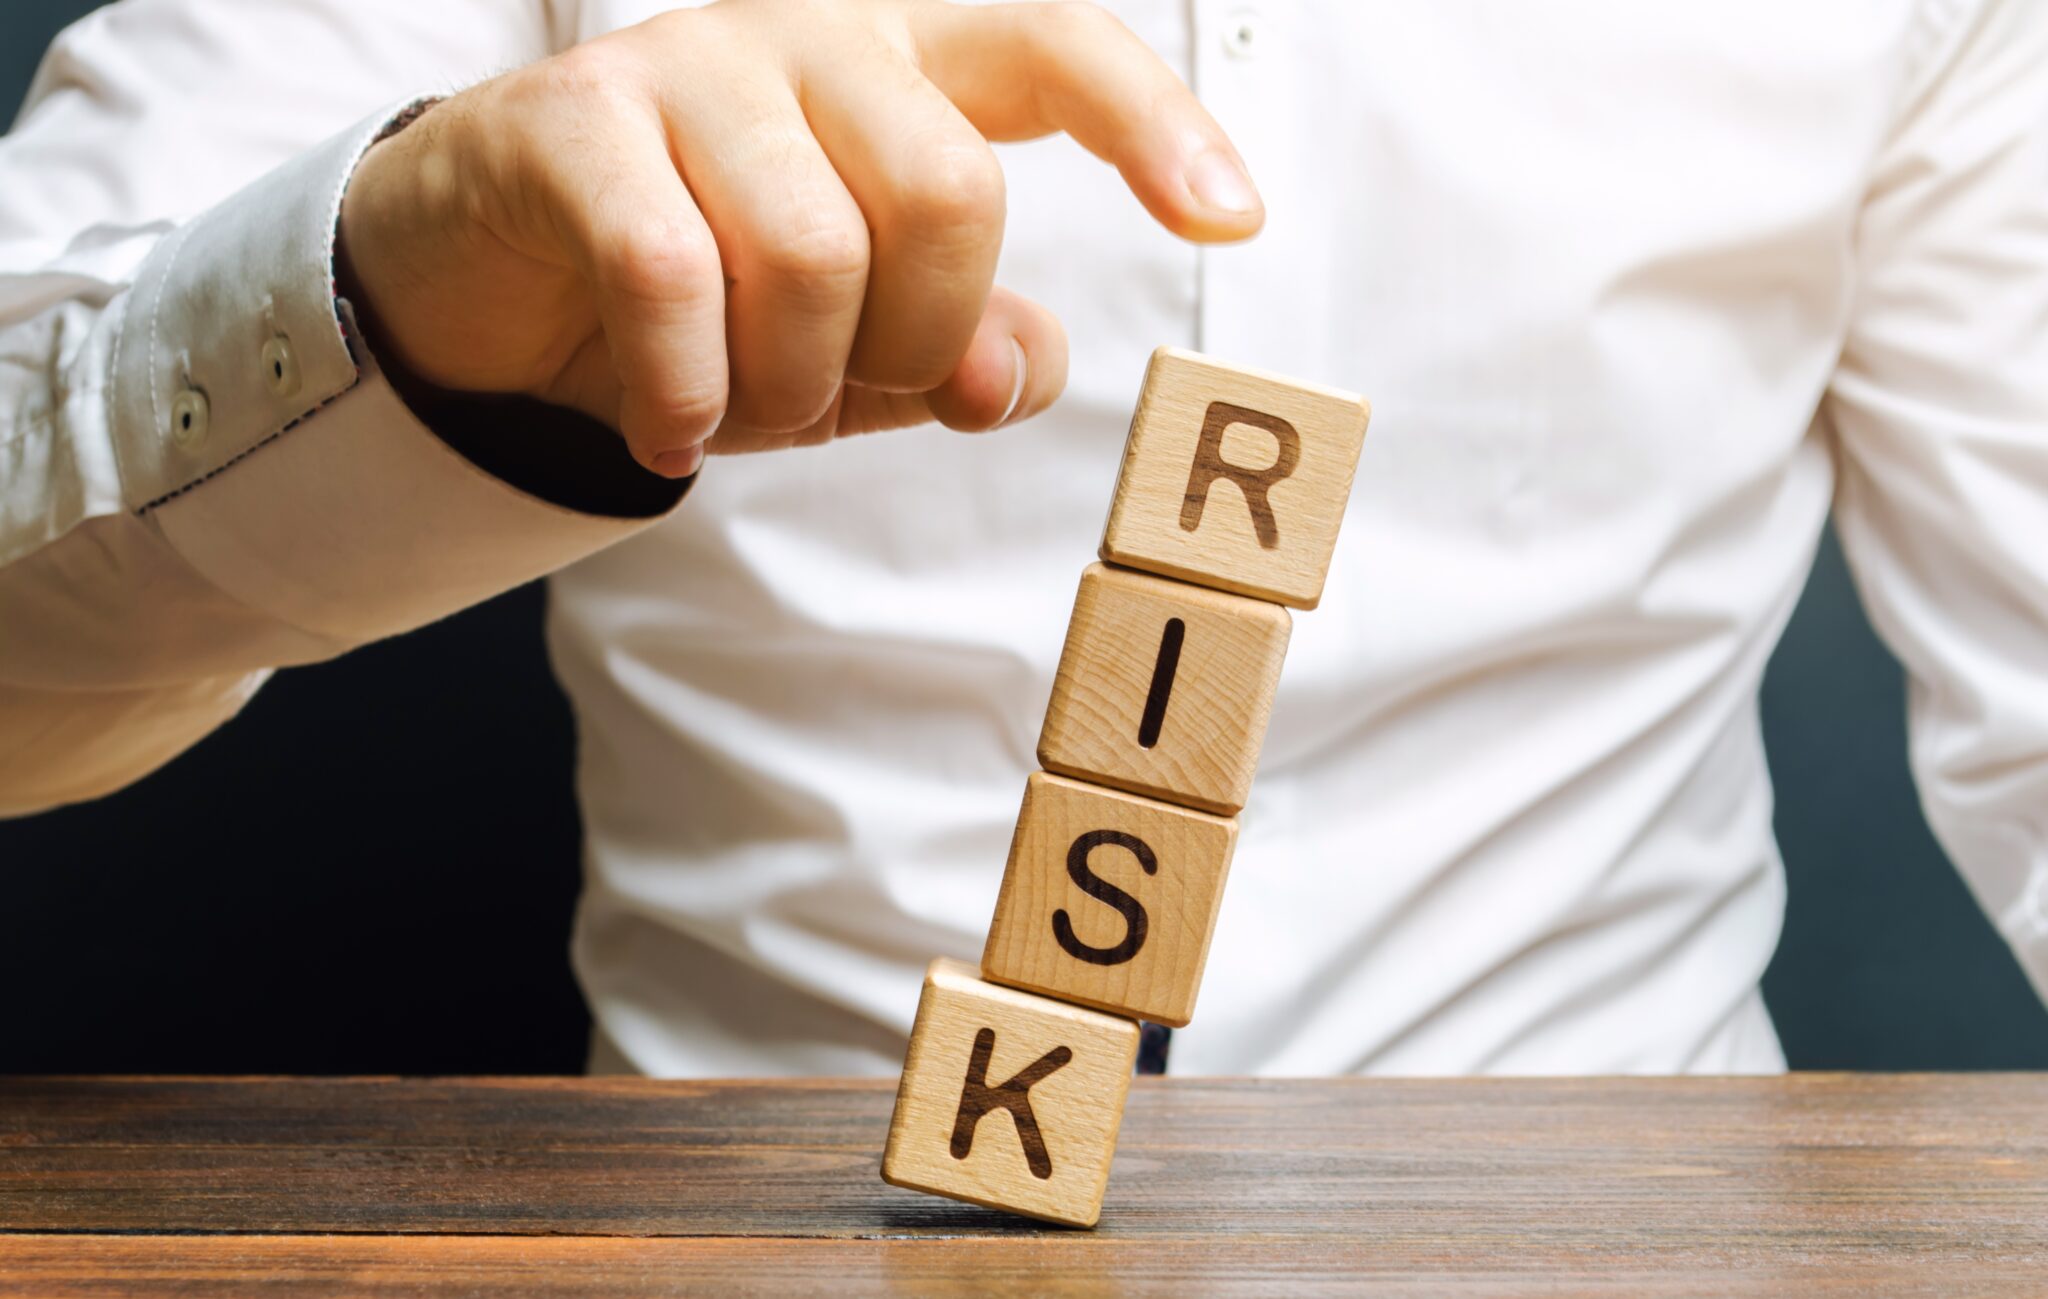 tujuan manajemen risiko